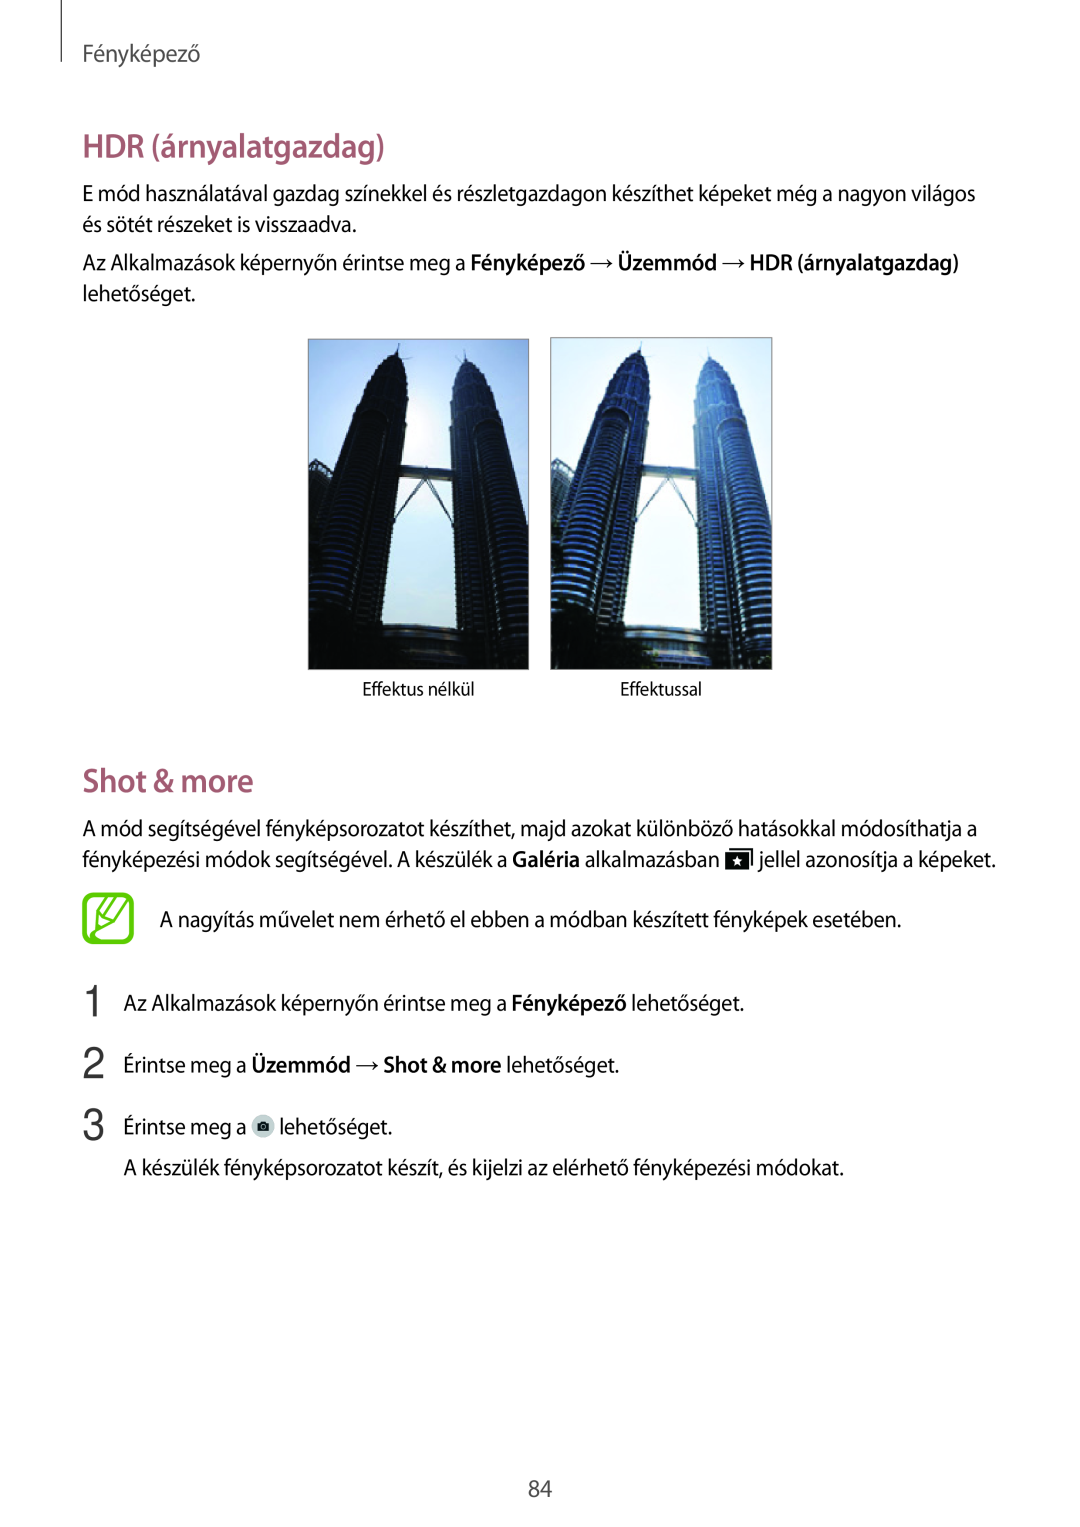 Samsung SM-T705NTSAXEZ, SM-T705NZWAATO, SM-T705NZWAXEO manual HDR árnyalatgazdag, Shot & more, Fényképező, Effektus nélkül 